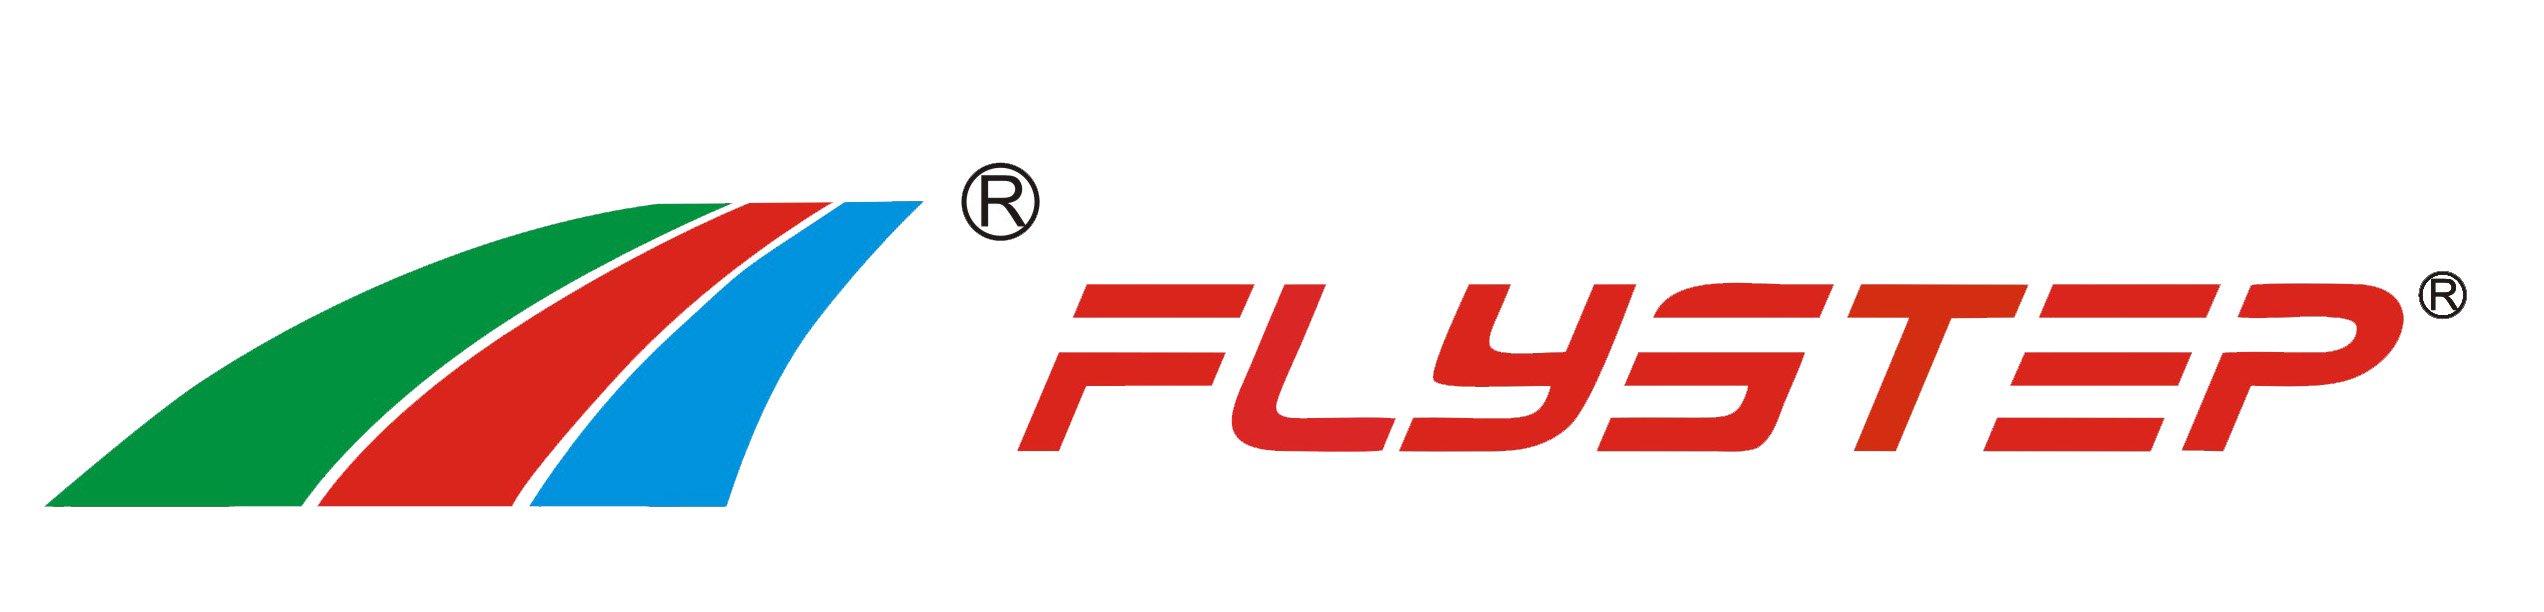 FLYSTEP Array image89